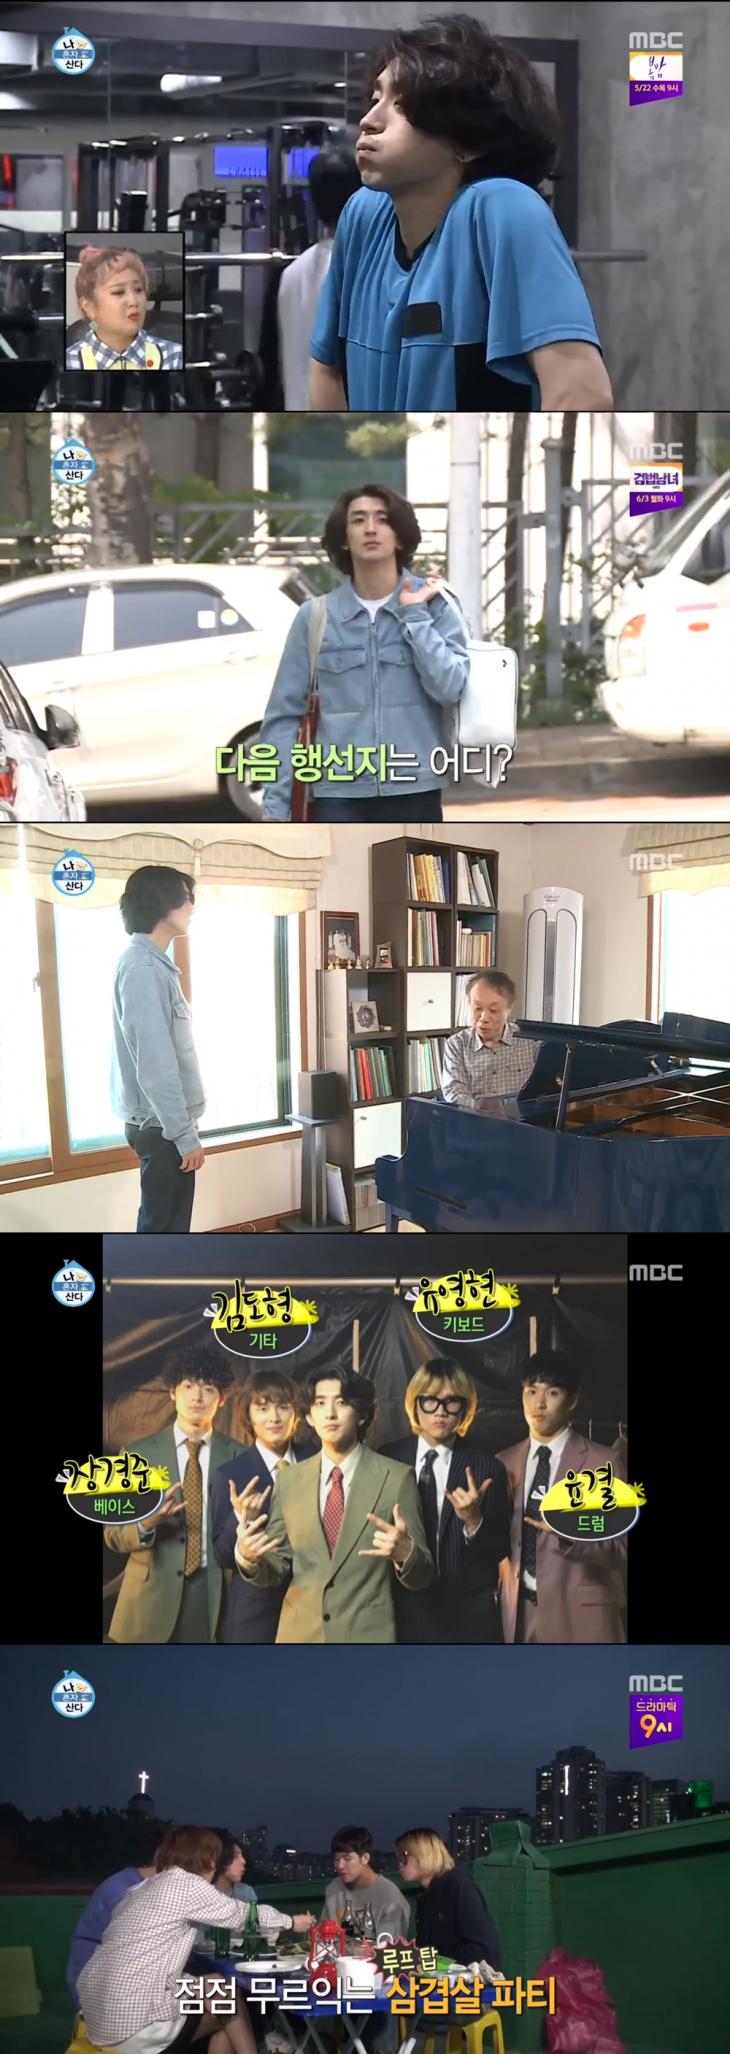 MBC '나 혼자 산다' 방송 캡쳐